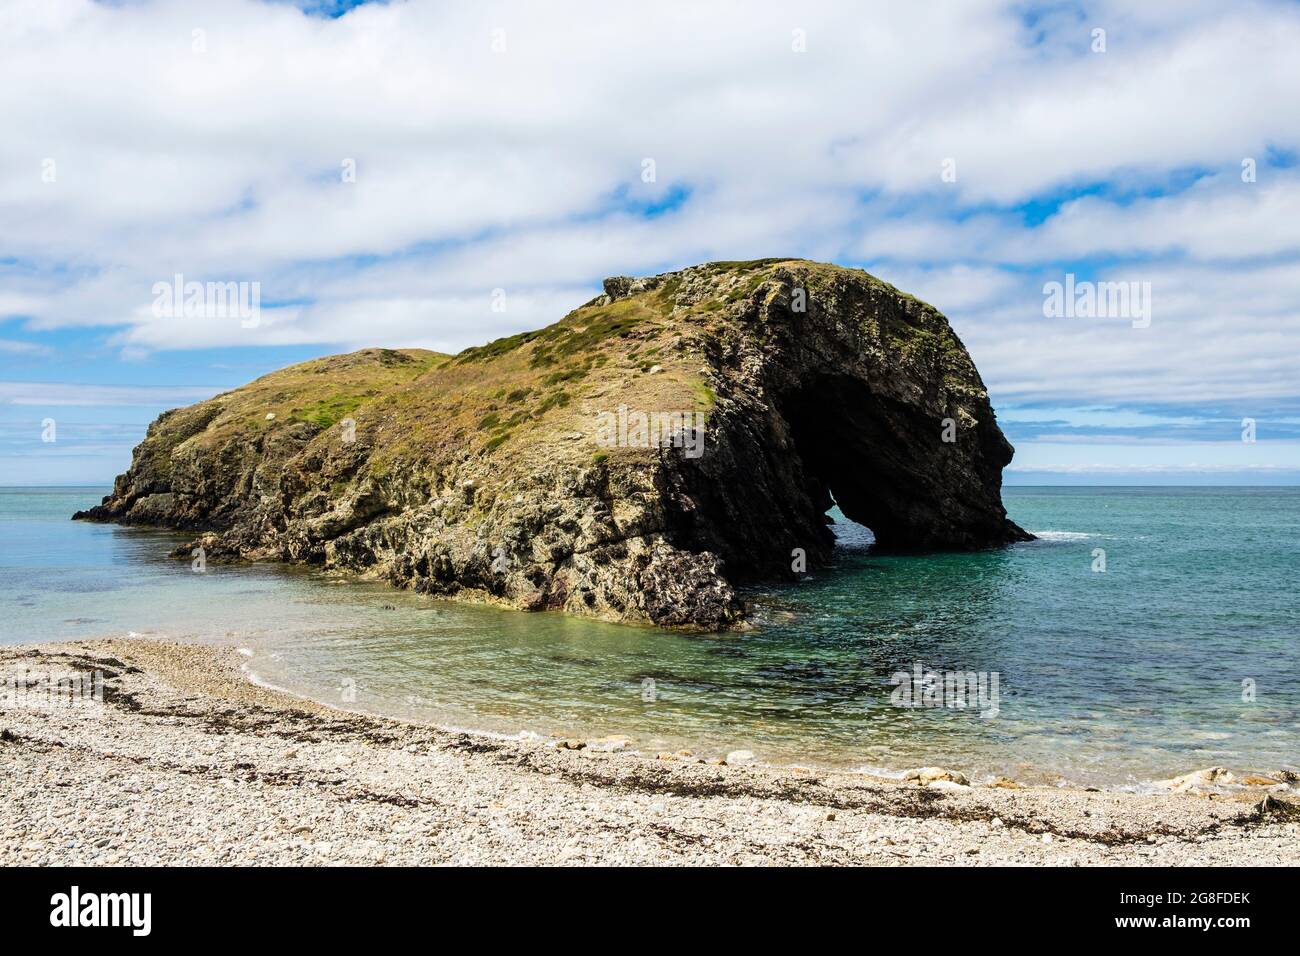 Kiesstrand und Ynys y Fydlyn Felseninsel mit Bogen bei Flut in der Nähe von Carmel Head an der Küste. Isle of Anglesey, Nordwales, Großbritannien Stockfoto